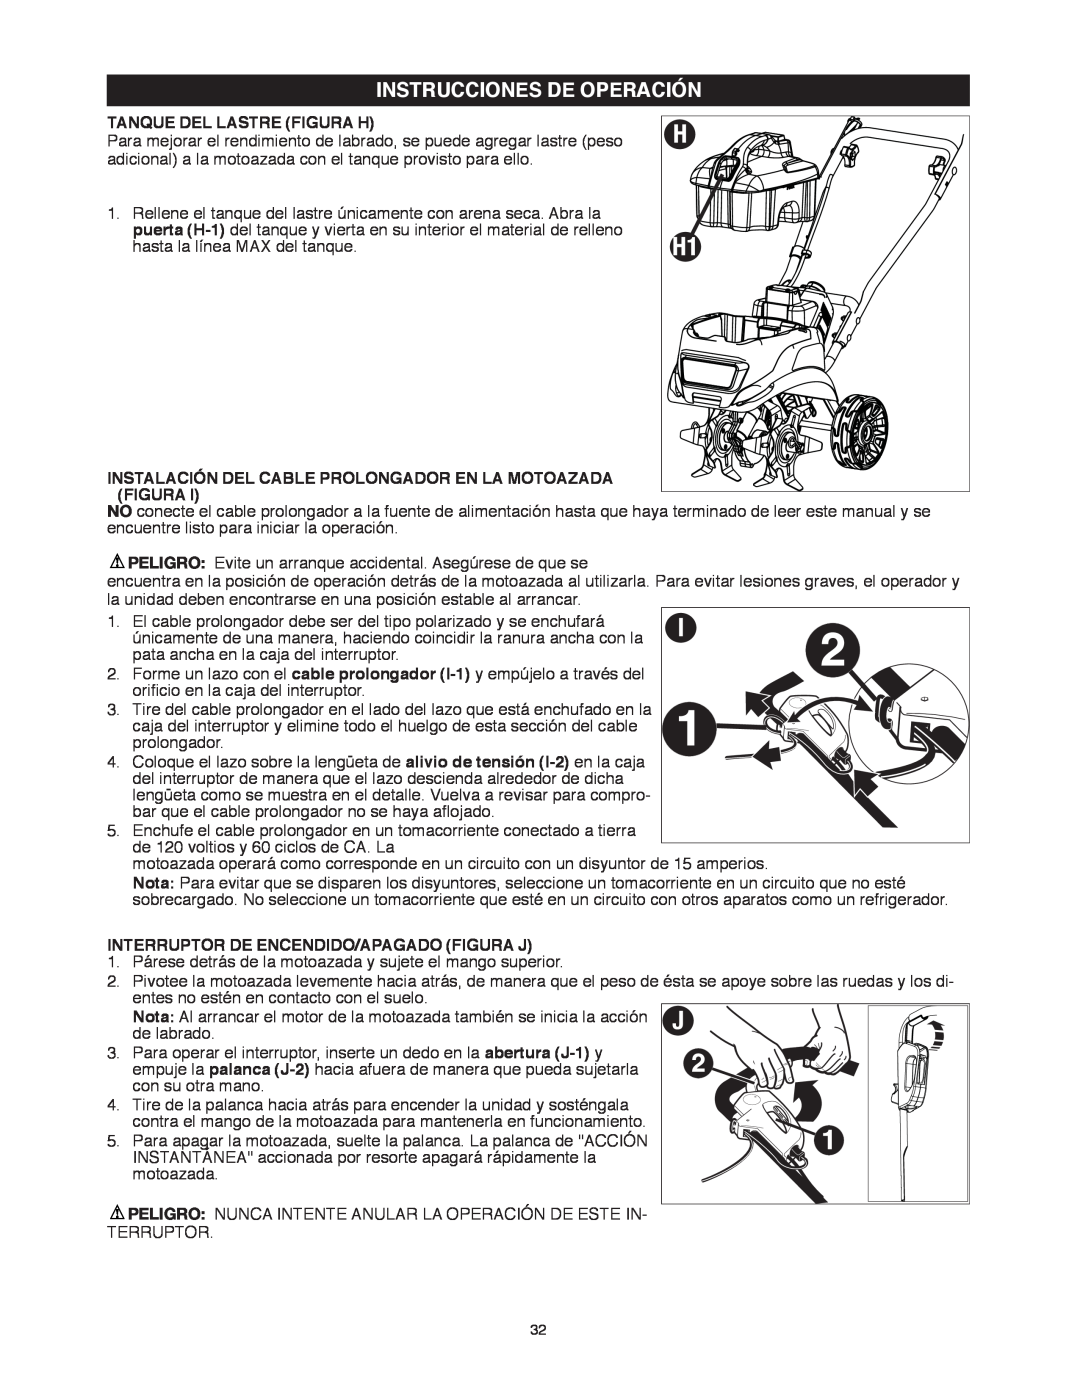 Black & Decker TL10 Instrucciones De Operación, Tanque Del Lastre Figura H, Interruptor De Encendido/Apagado Figura J 